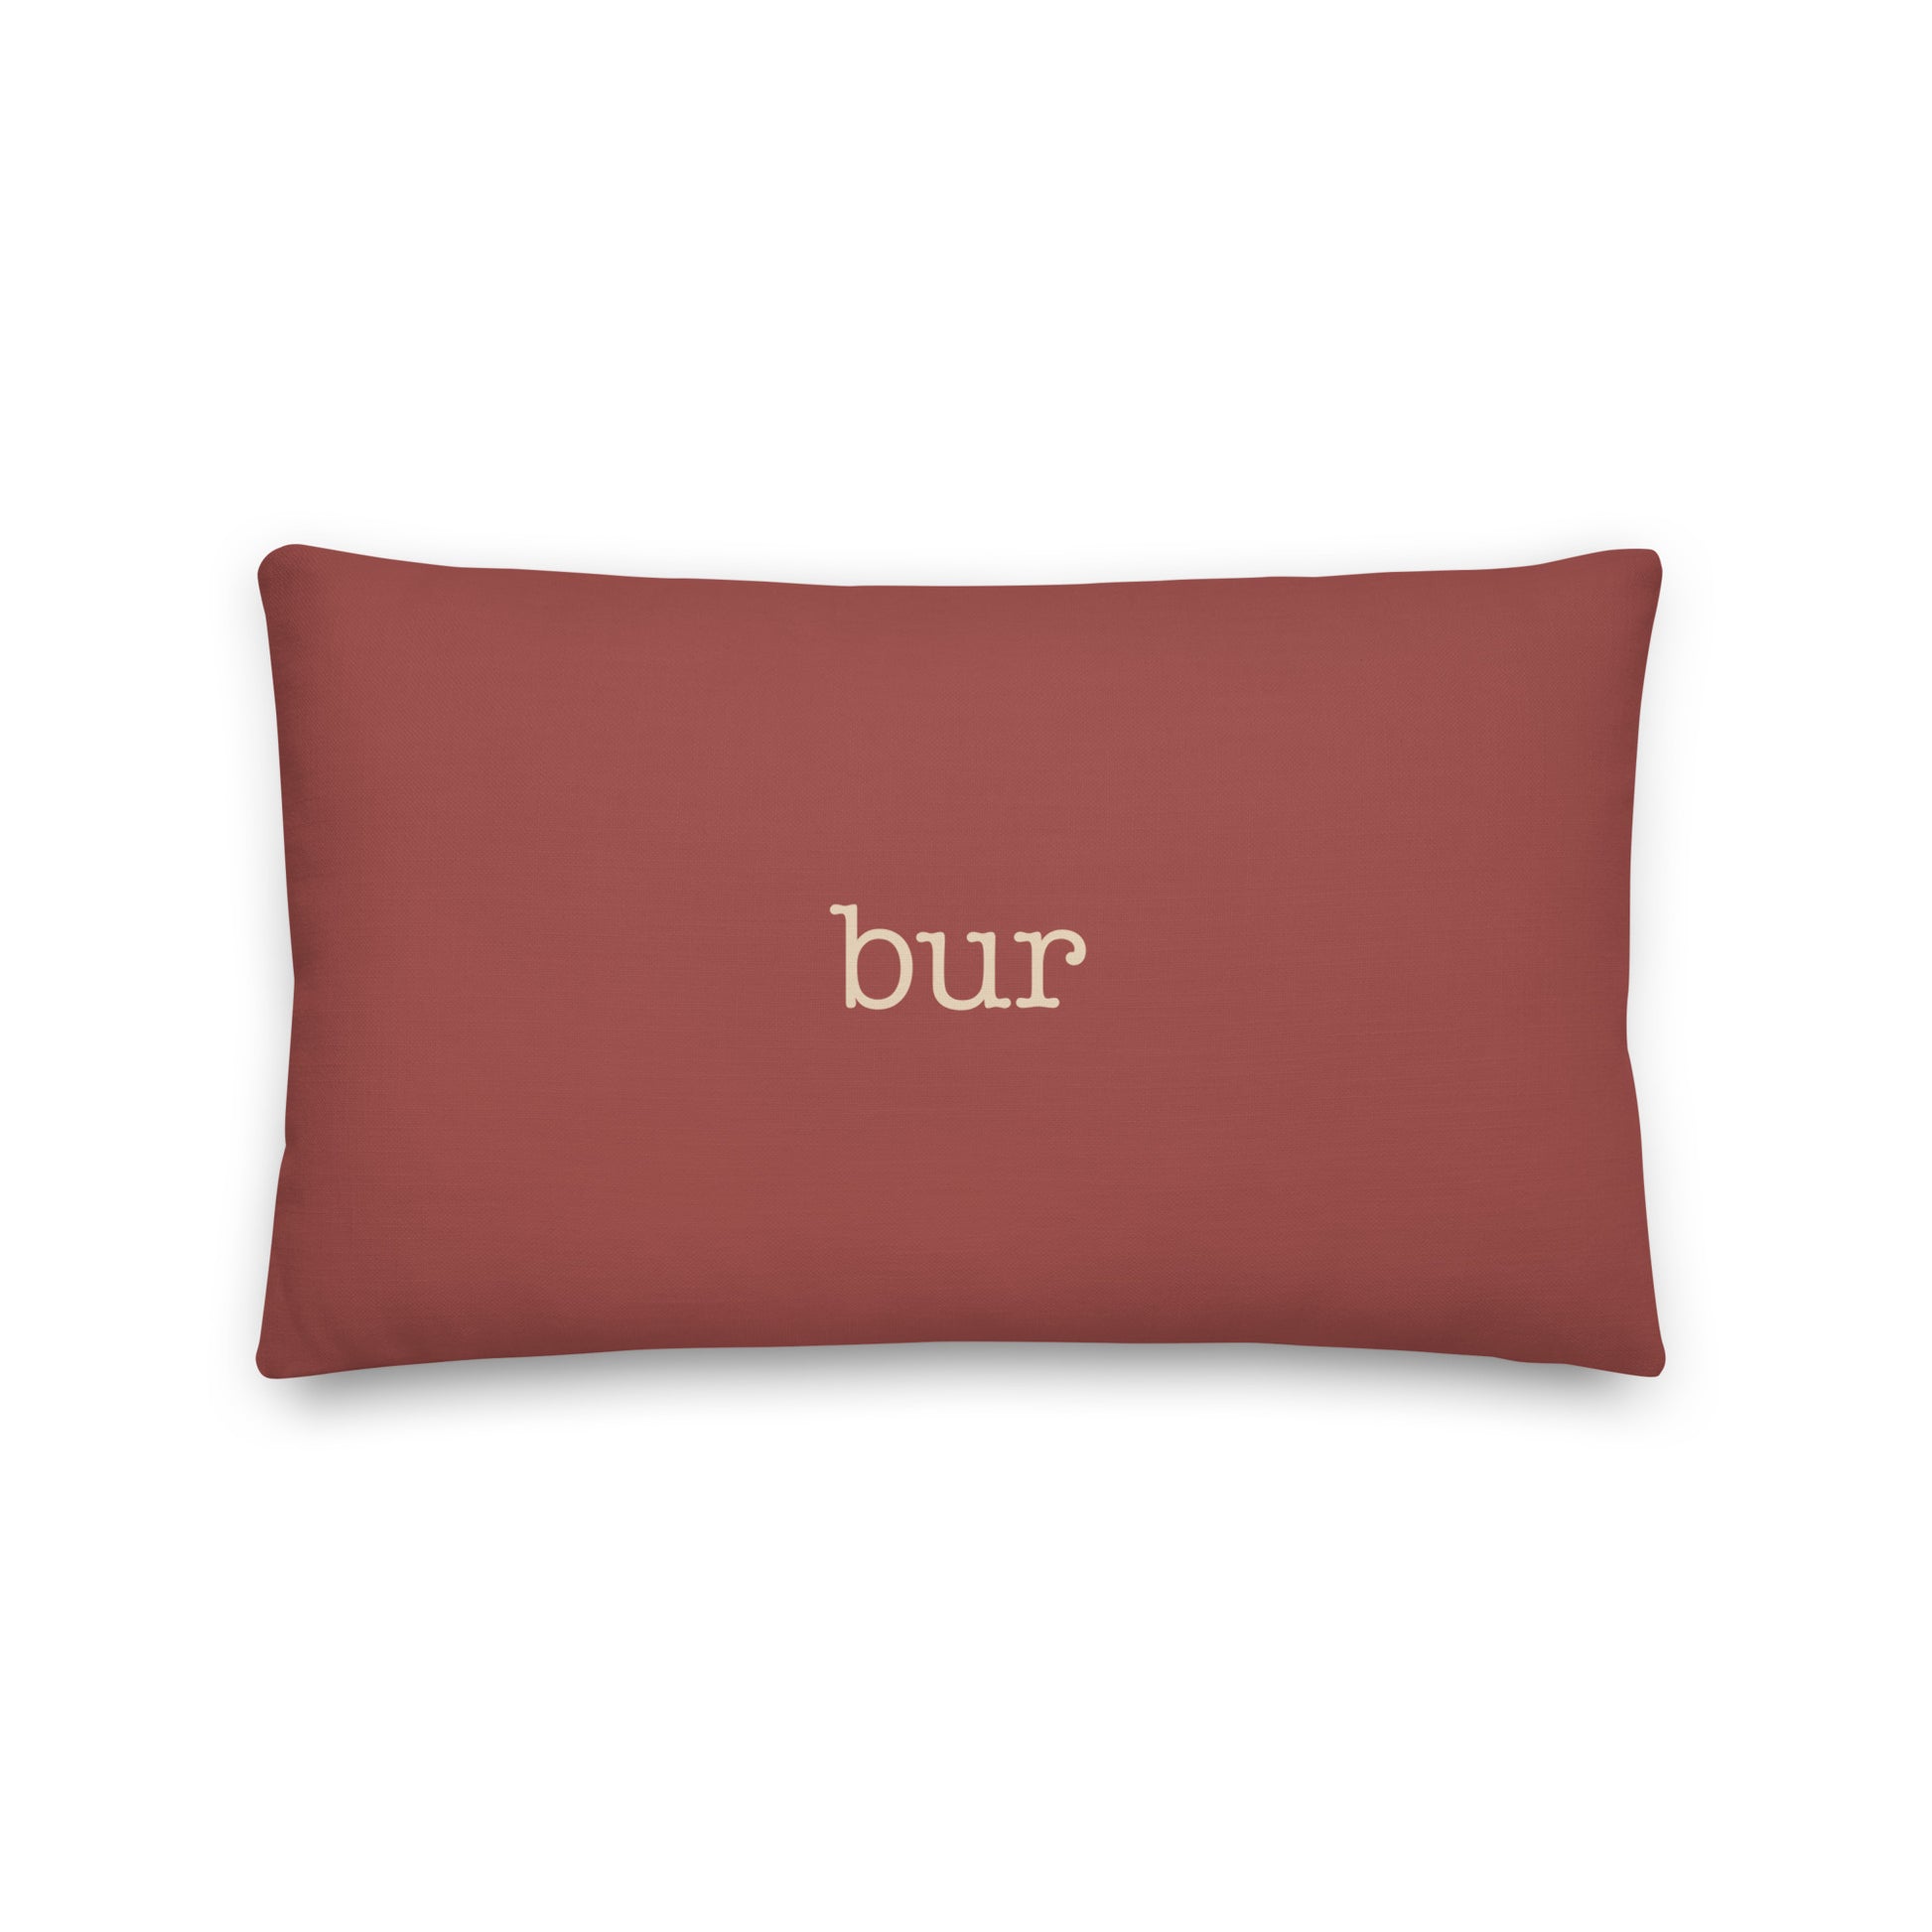 Typewriter Pillow - Terra Cotta • BUR Burbank • YHM Designs - Image 02